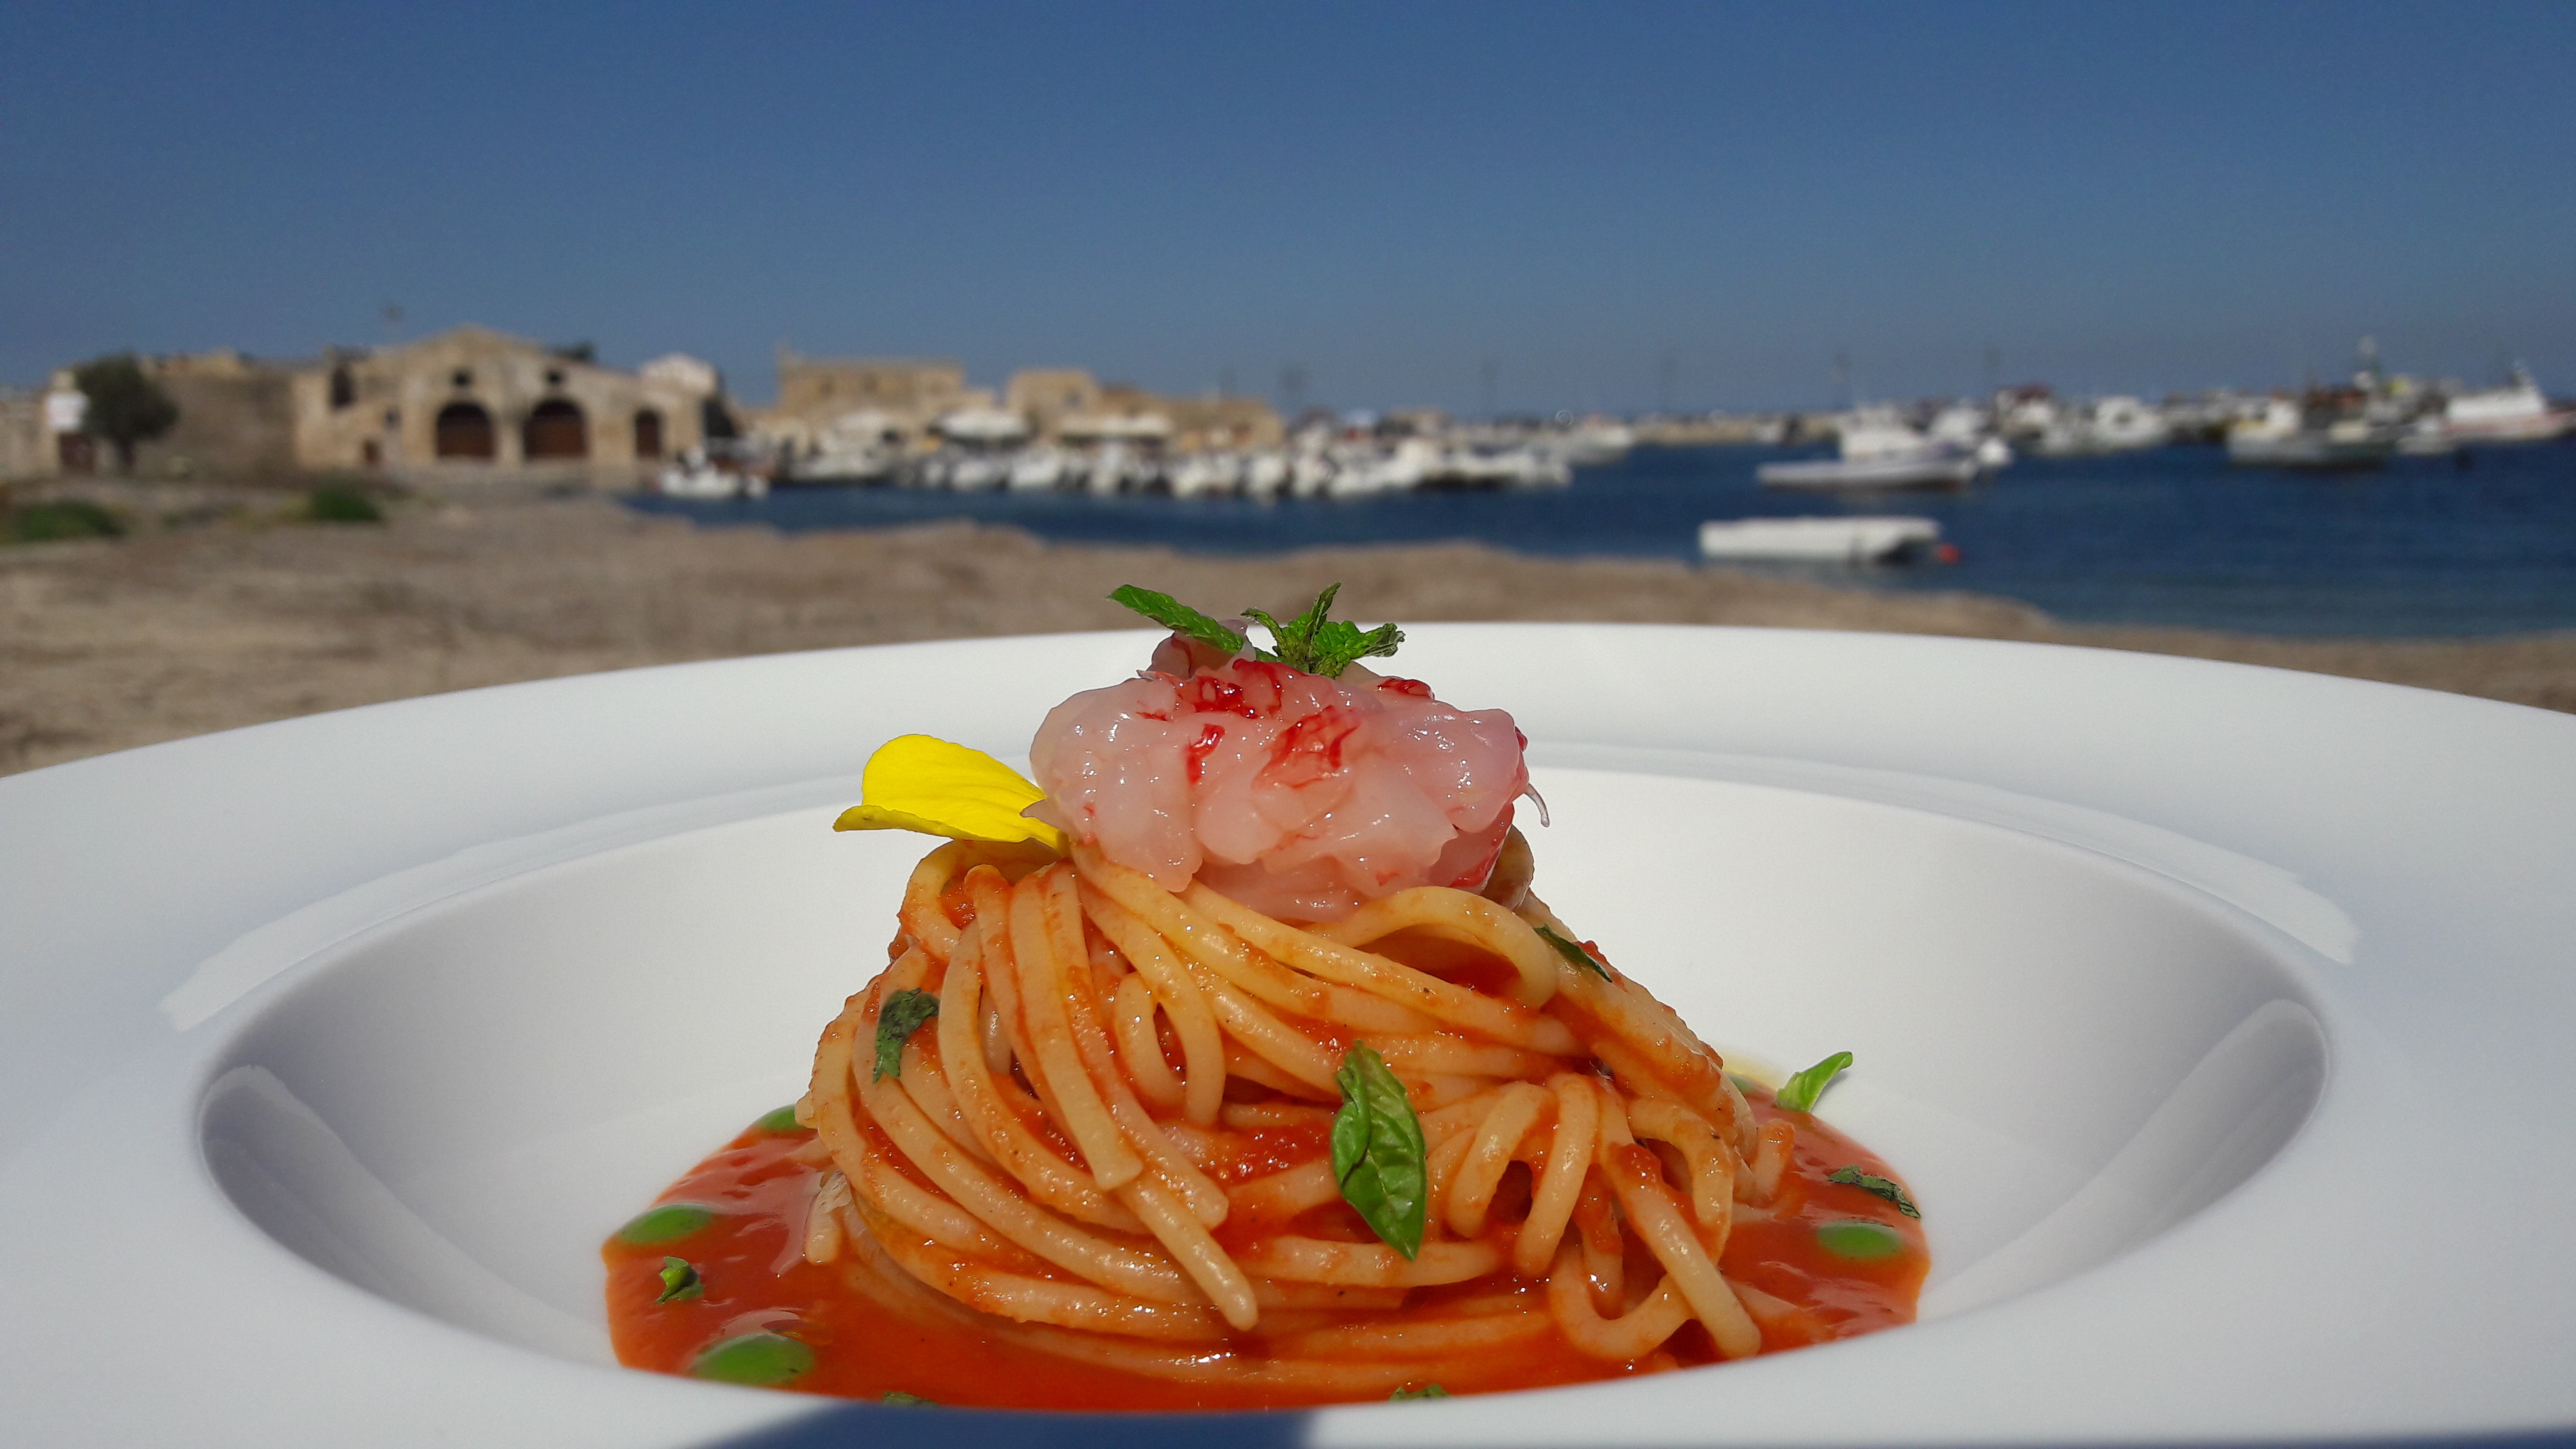 La ricetta dello Chef Campisi: un gustosissimo primo piatto. Oggi prepariamo insieme a voi gli Spaghetti con salsa di pomodoro ciliegino di Pachino IGP con tartare di gambero rosso e foglie di menta.